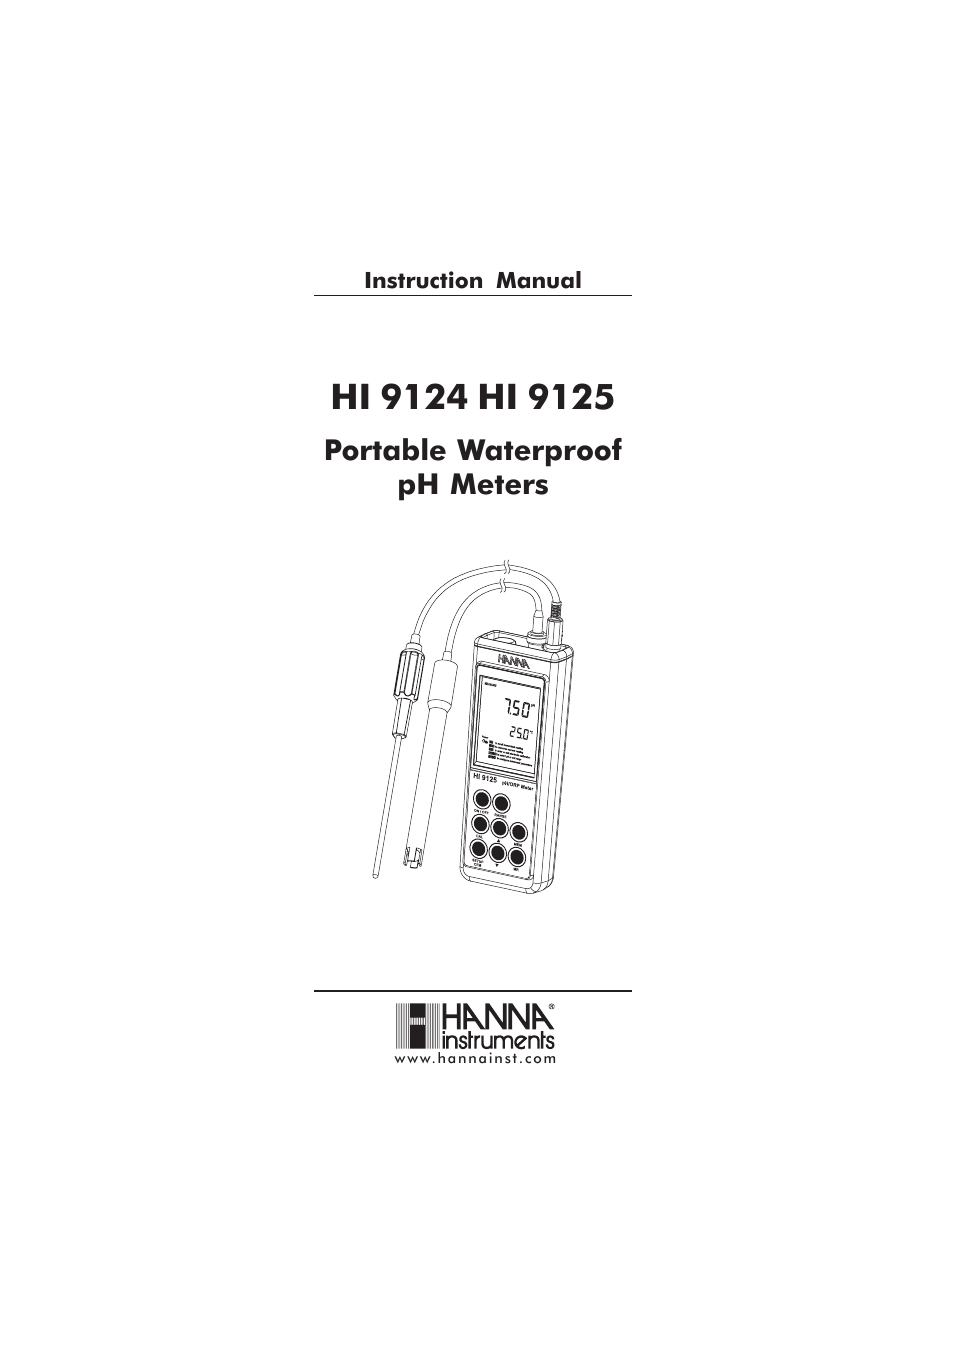 HI 9124